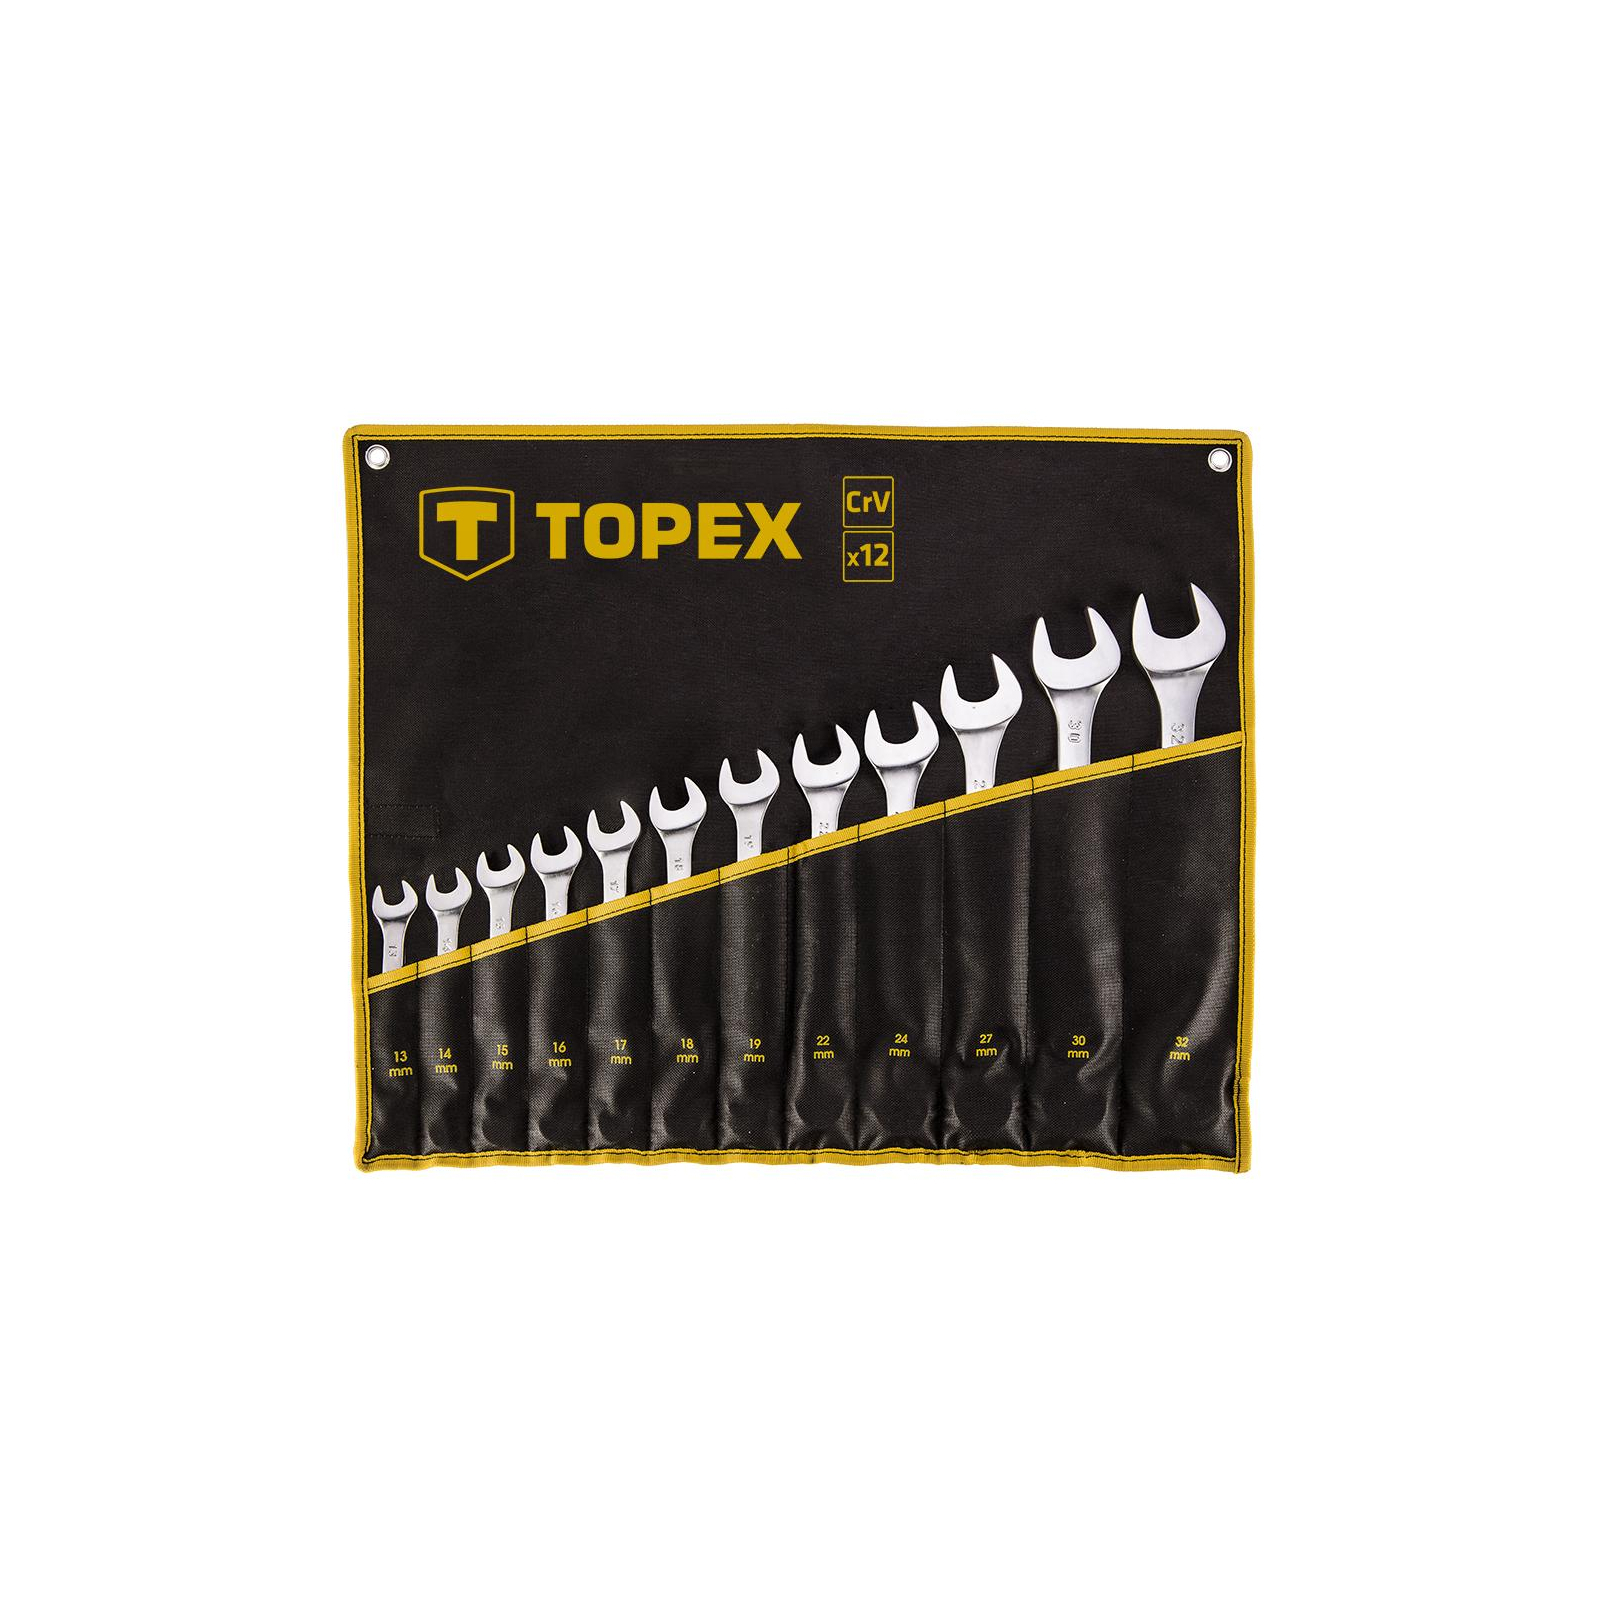 Набор инструментов Topex ключей комбинированных 13 -32 мм, 12 шт. (35D758)